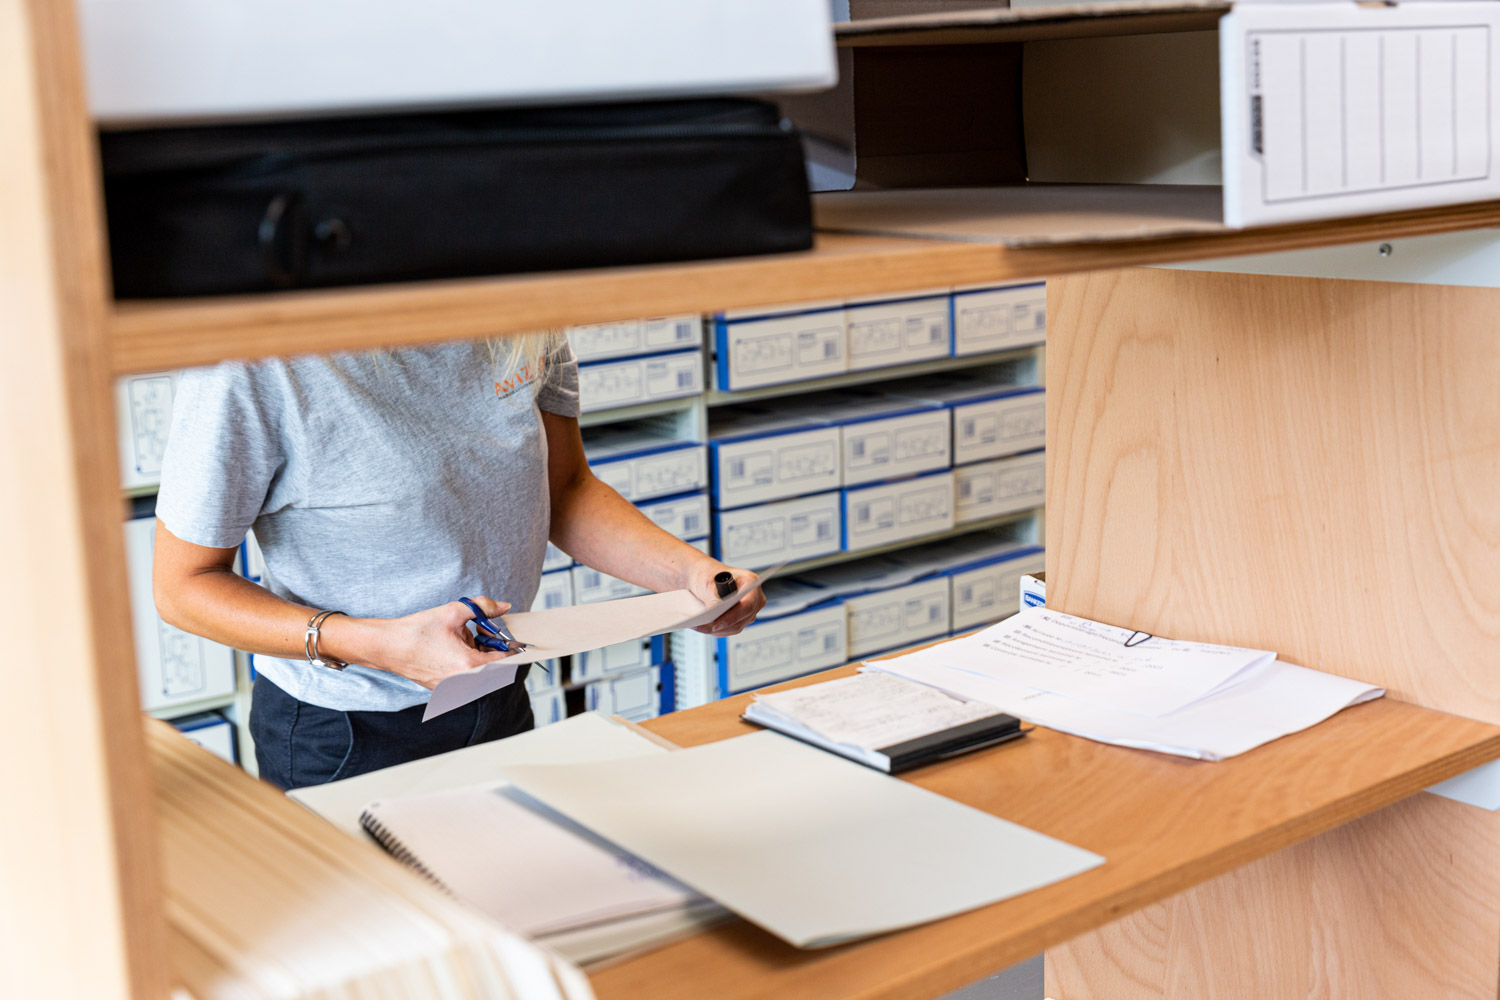 Une personne tri des documents avant des les places dans une boite d'archivage.